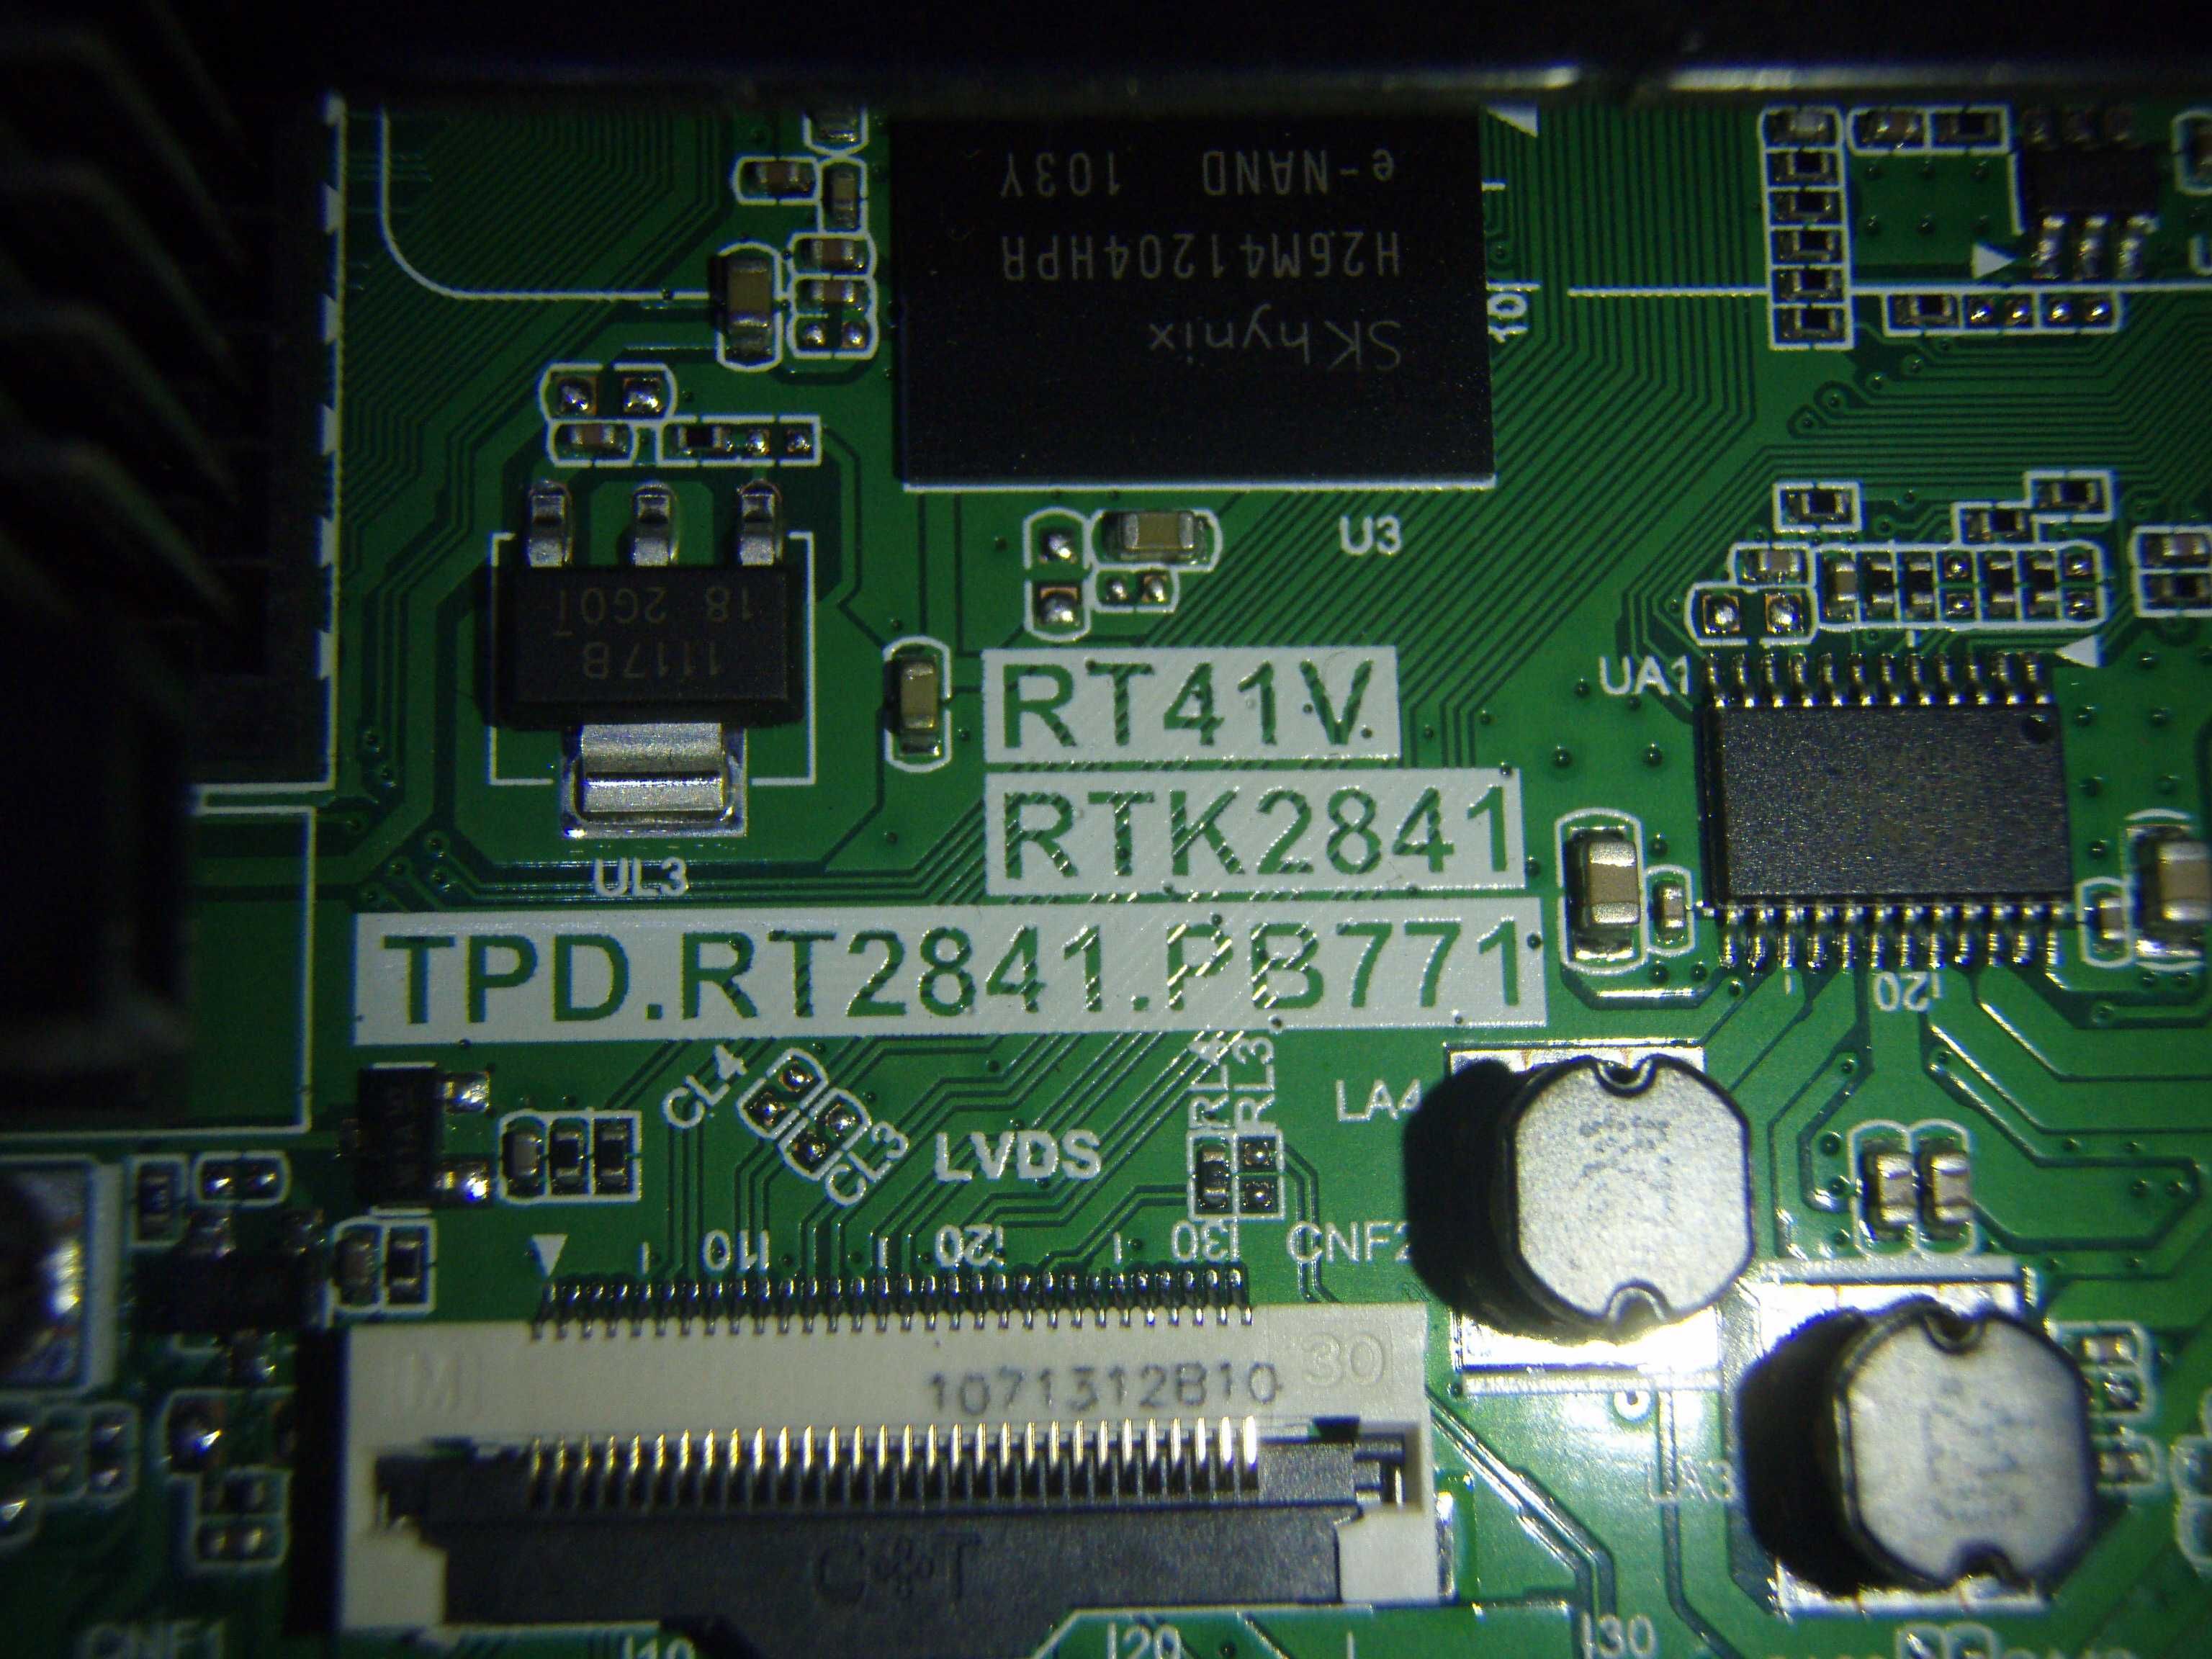 RT41V RTK2841 TPD.RT2841.PB771 4C-LB3205-ZM02J WT84R2600 TCL 32ES561